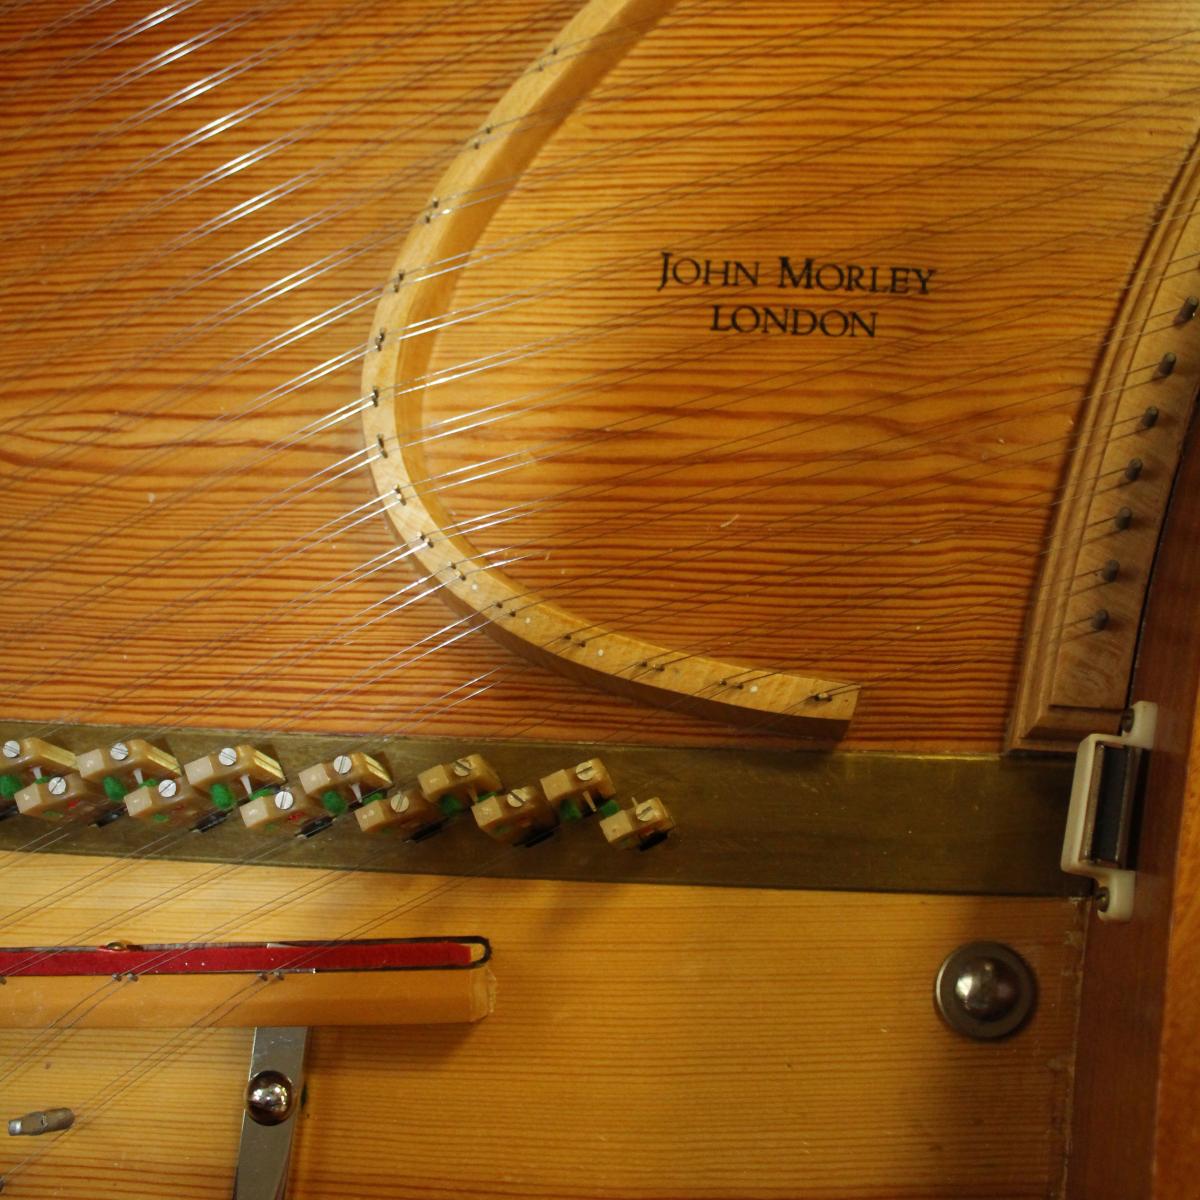 John Morley Spinet M1785 name on soundboard, bridge and jacks